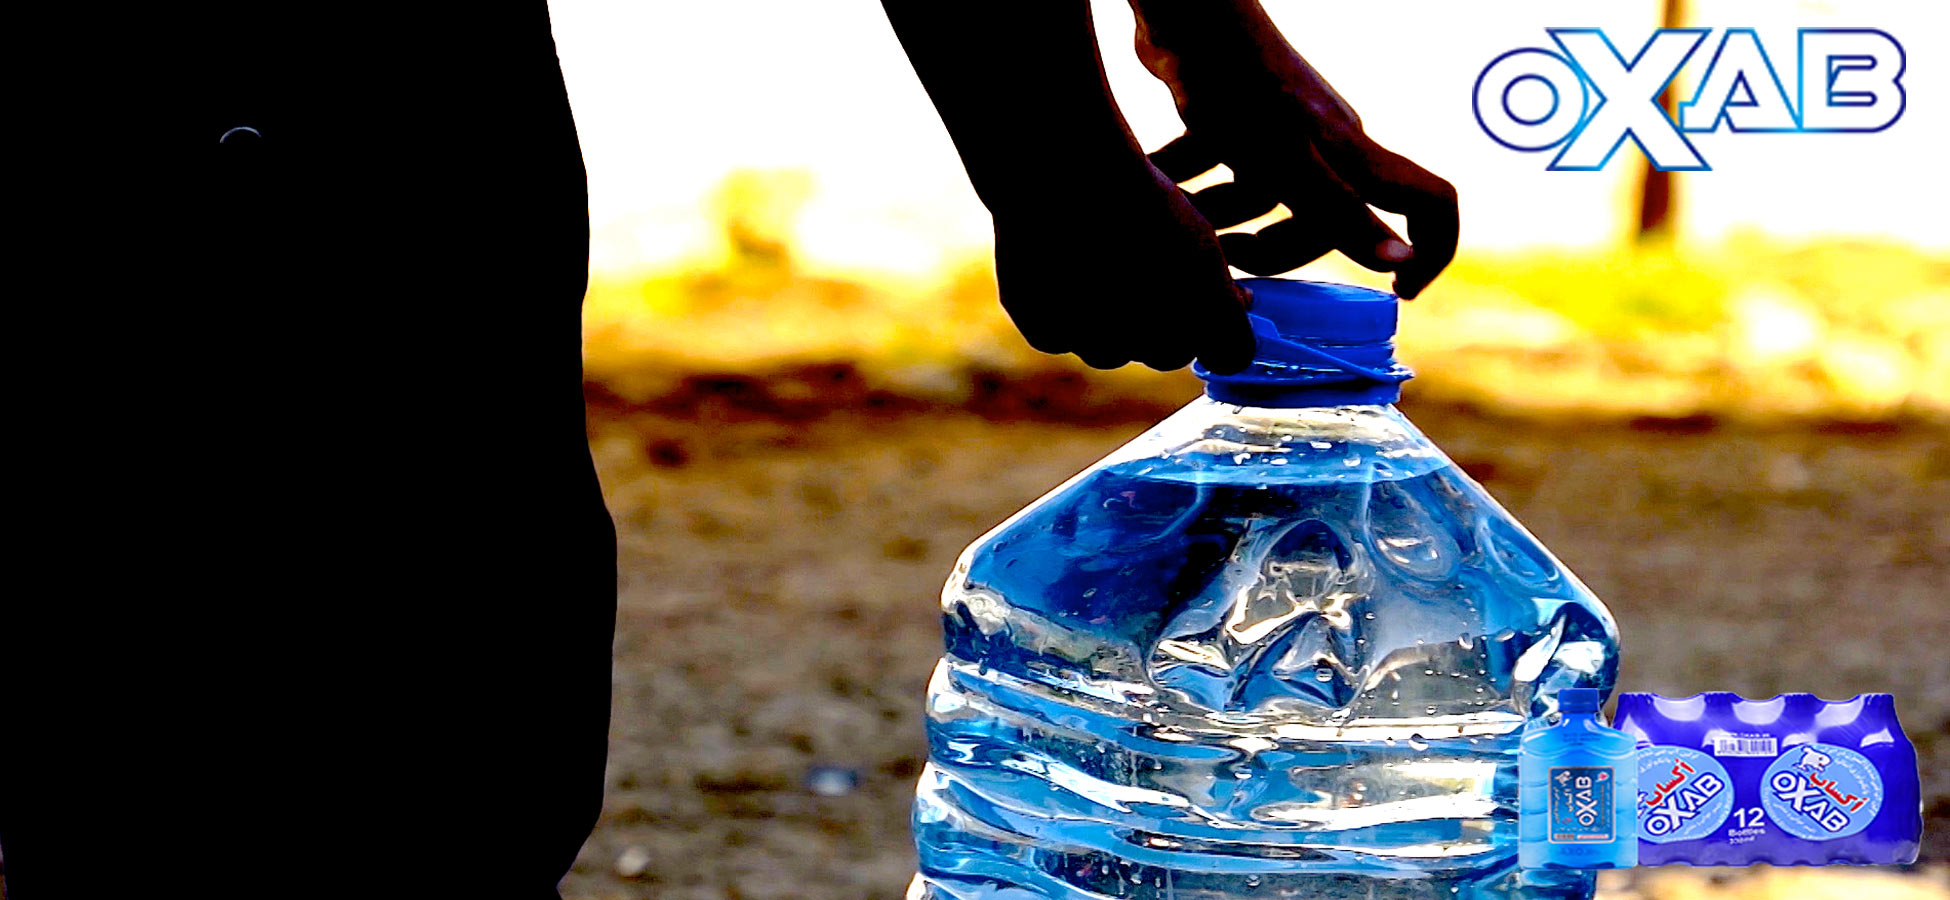 آیا آب بطری شده خراب می شود؟ چرا آب تاریخ انقضا دارد؟